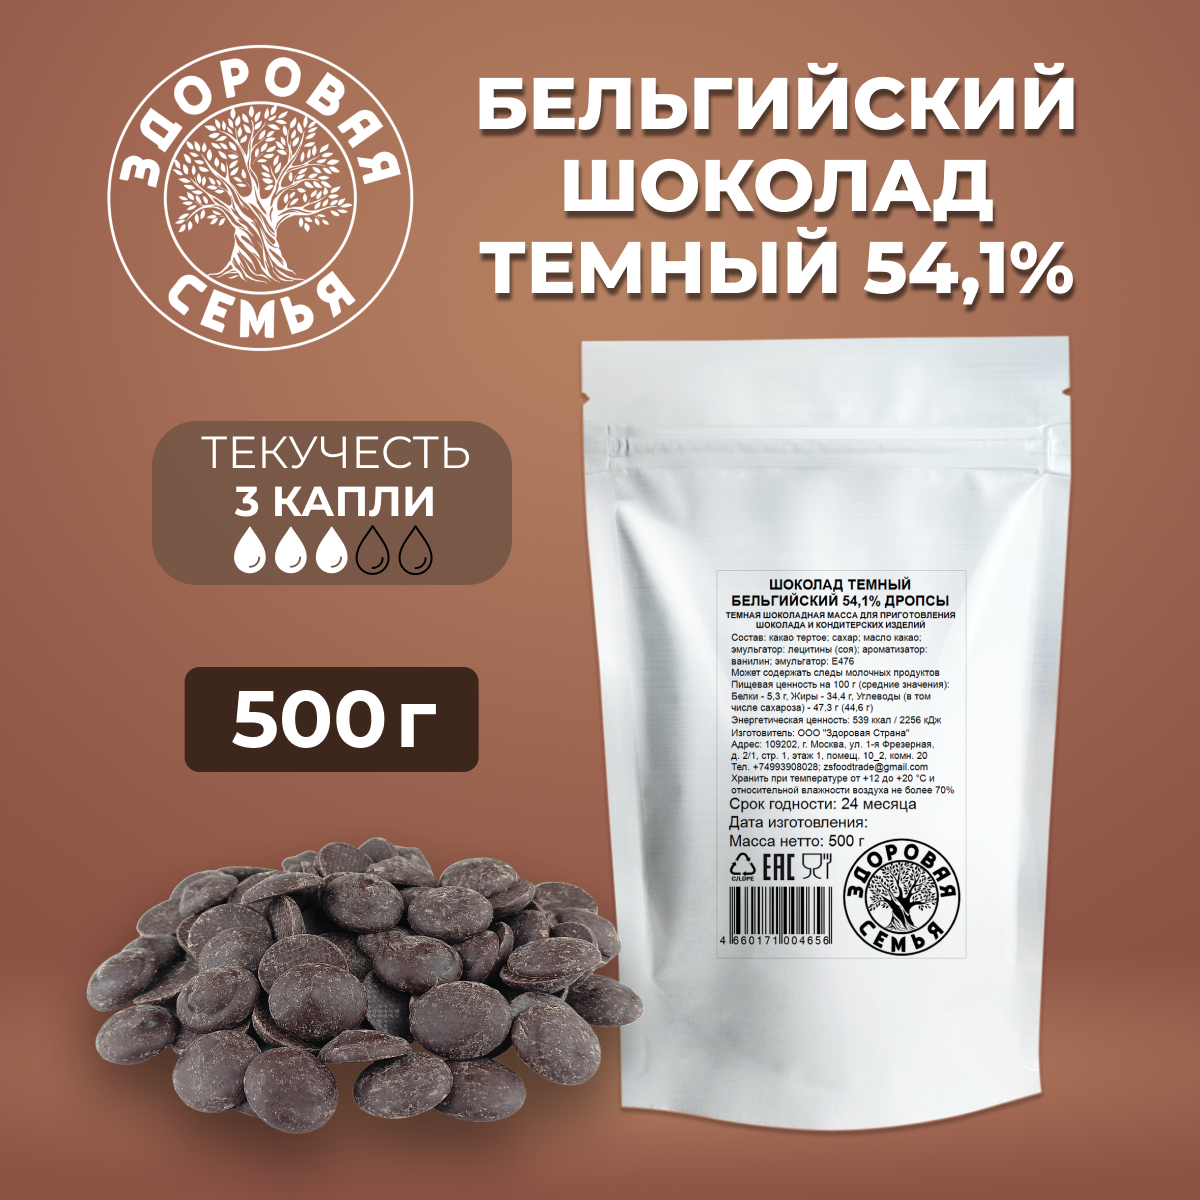 Темный бельгийский шоколад 54,1% дропсы, 500 г